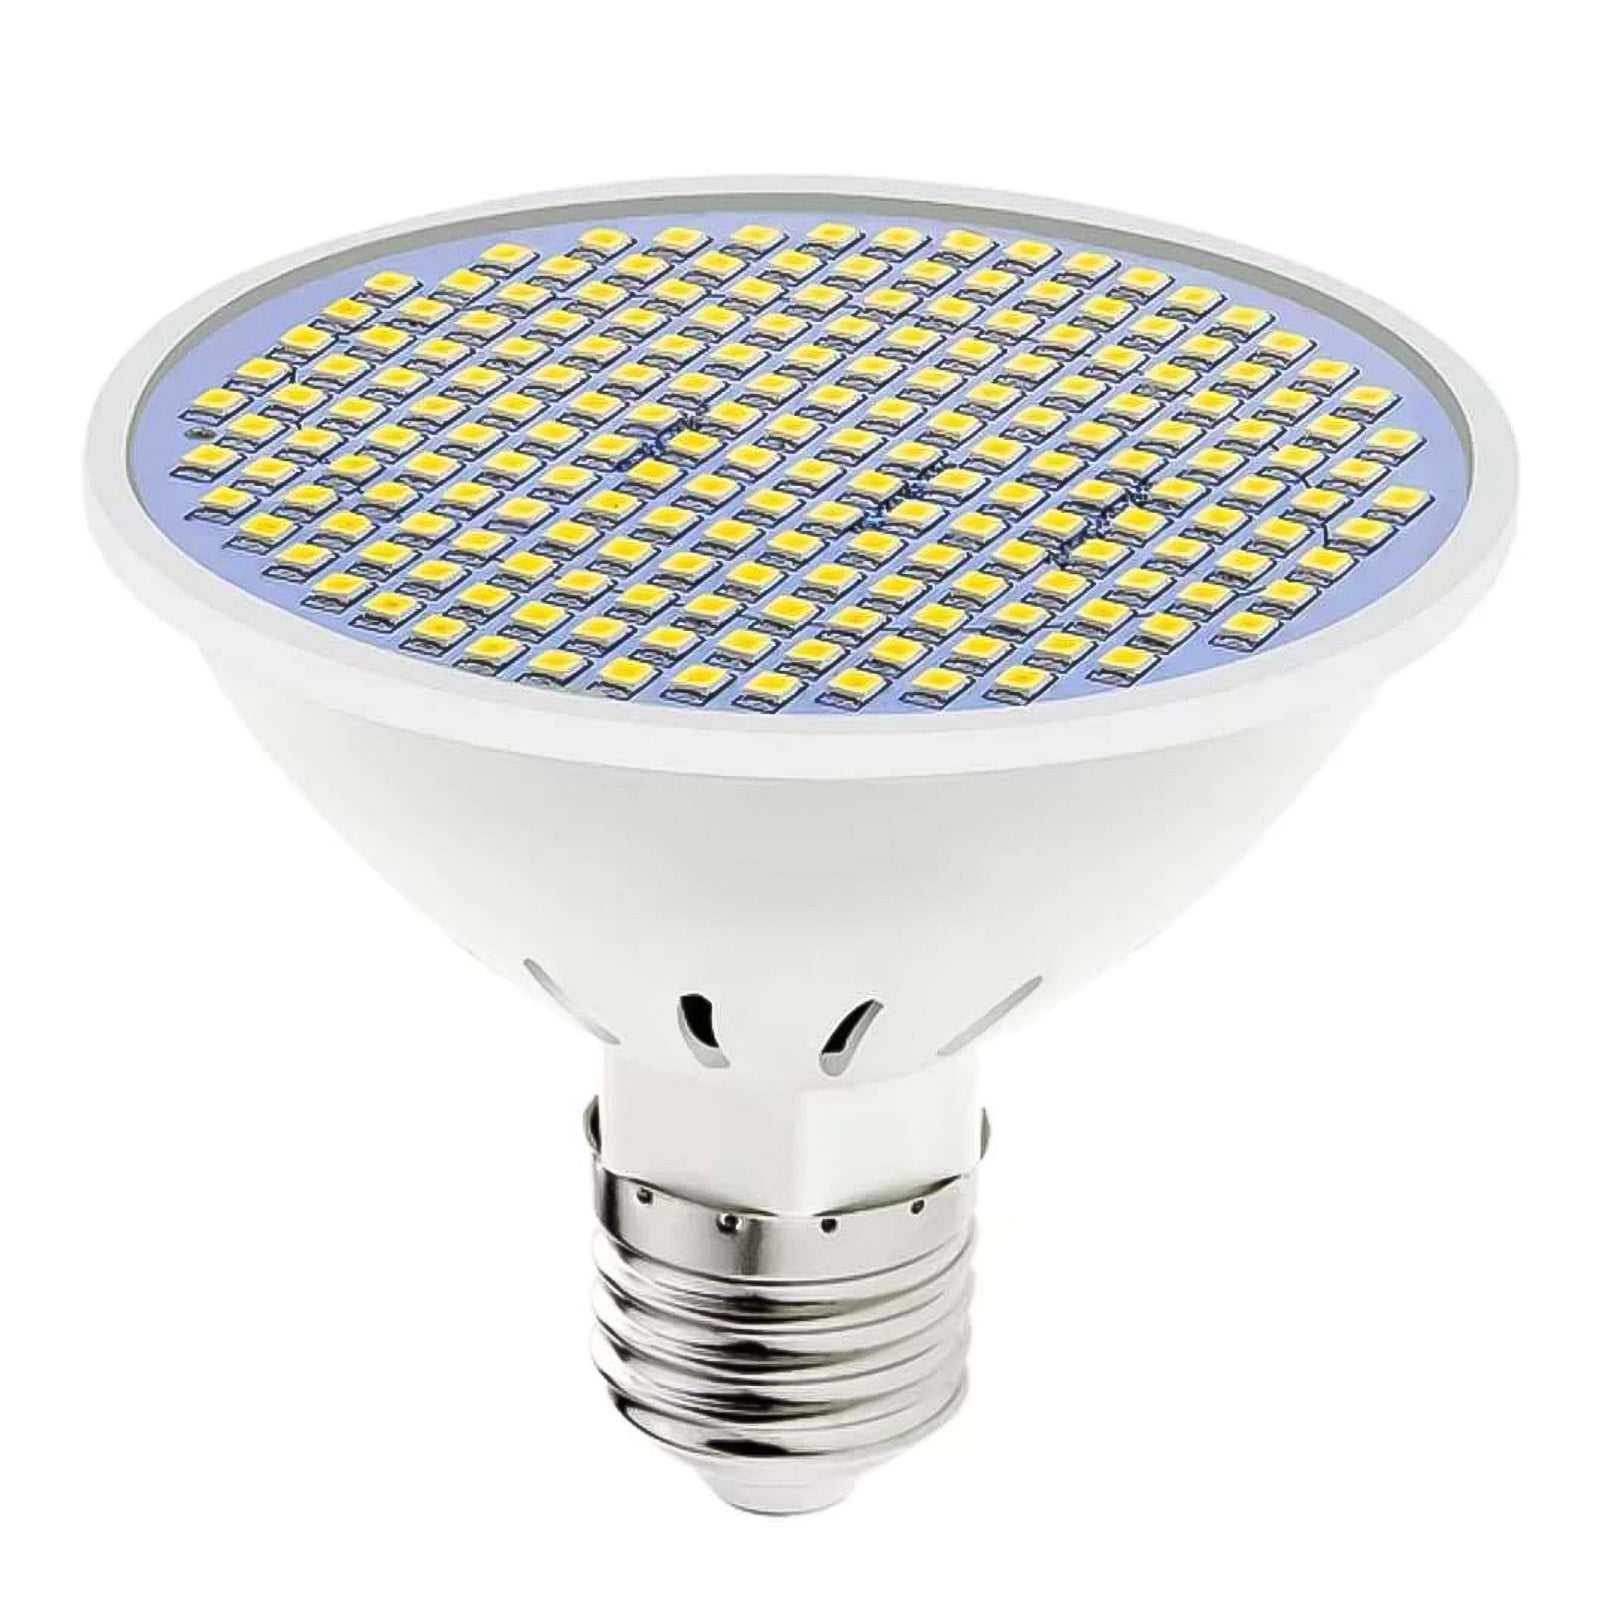 Full Spectrum E27 200 LED Grow Light Bulb Lamp for Vegetable Bloom Indoor Plant 